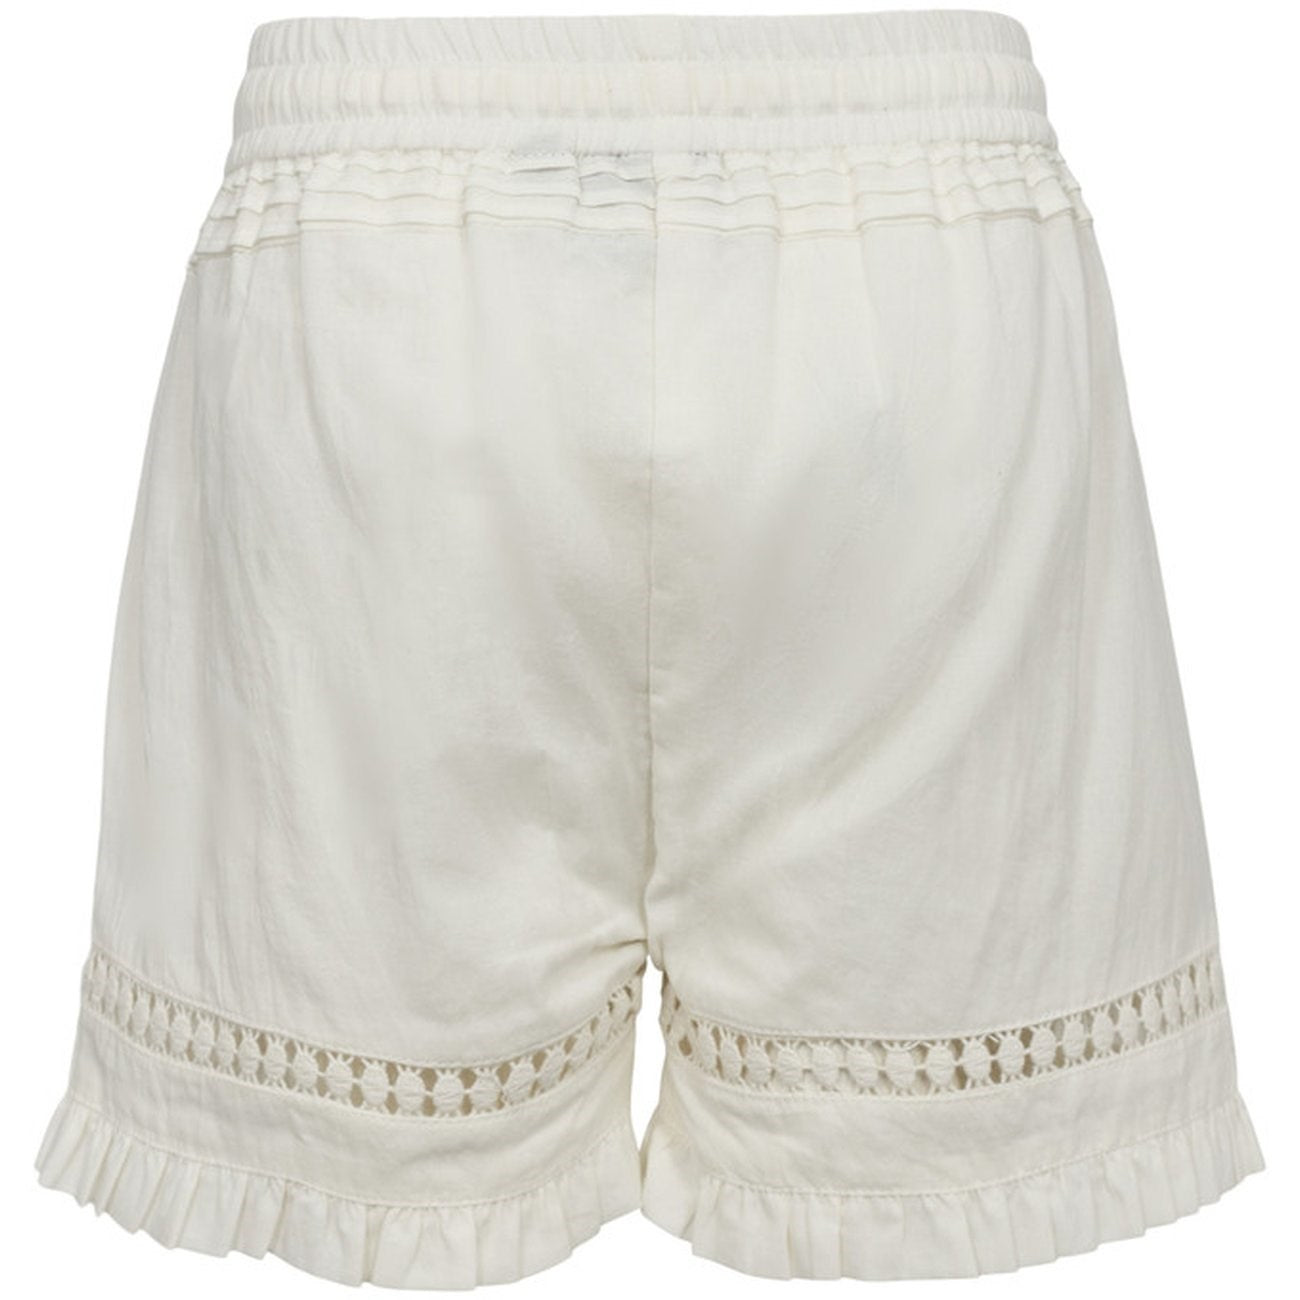 Sofie Schnoor Antique White Shorts 4